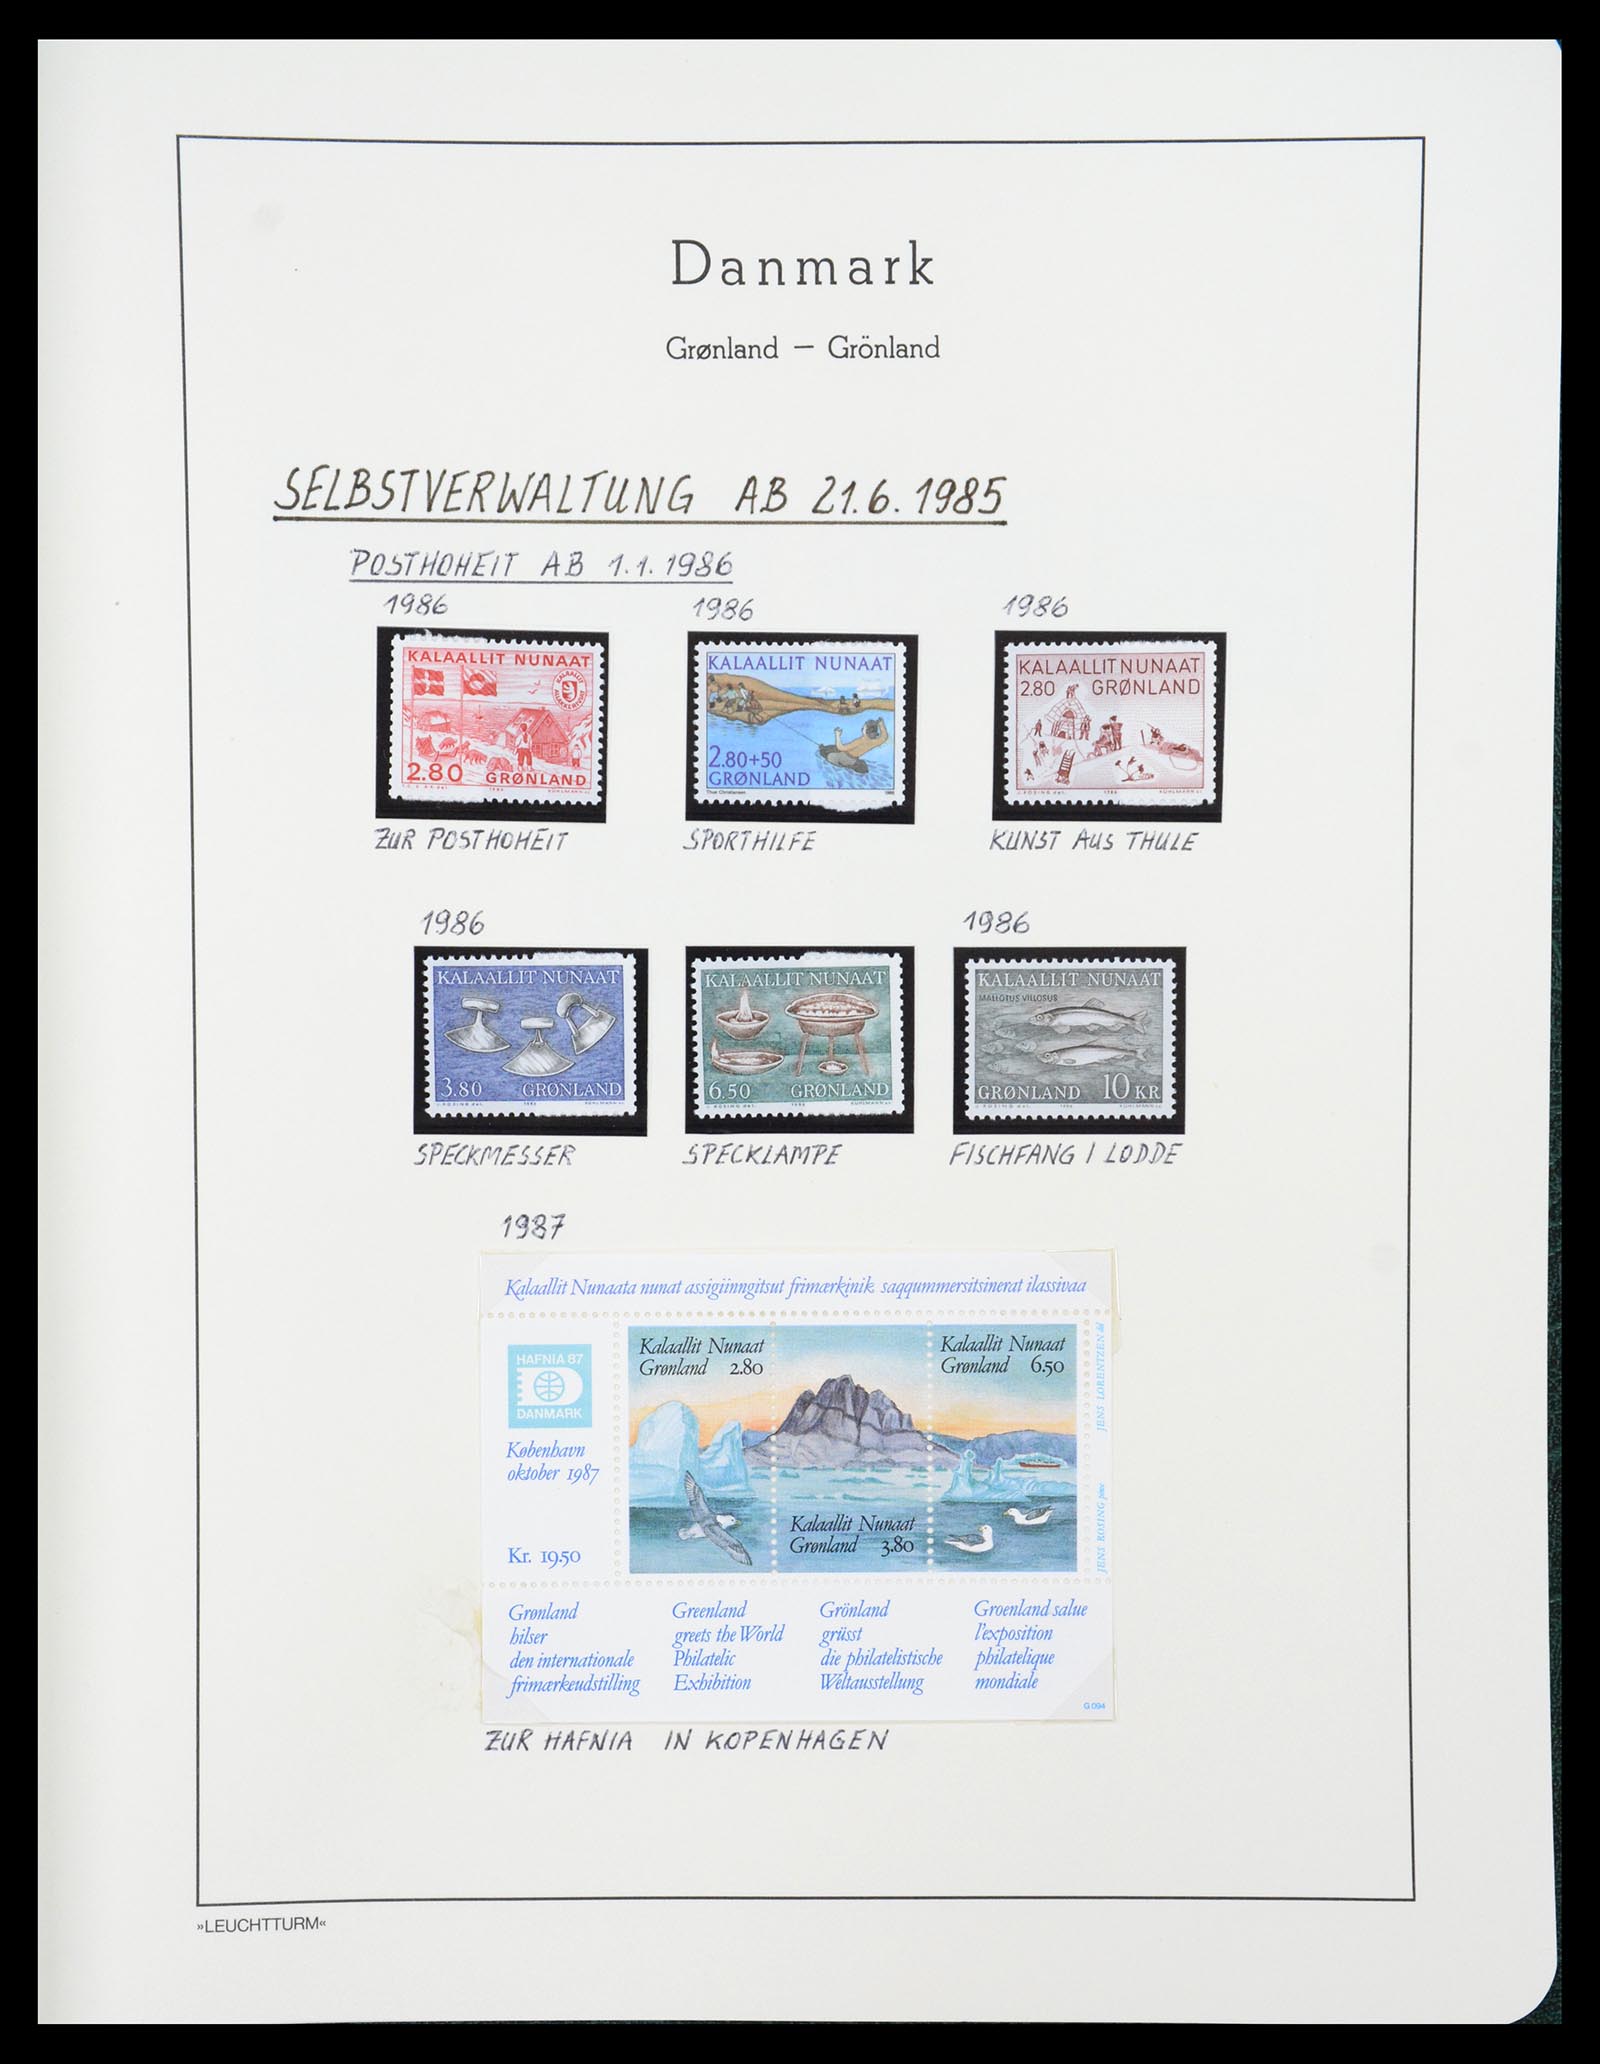 36612 185 - Stamp collection 36612 Denemarken 1851-1990.